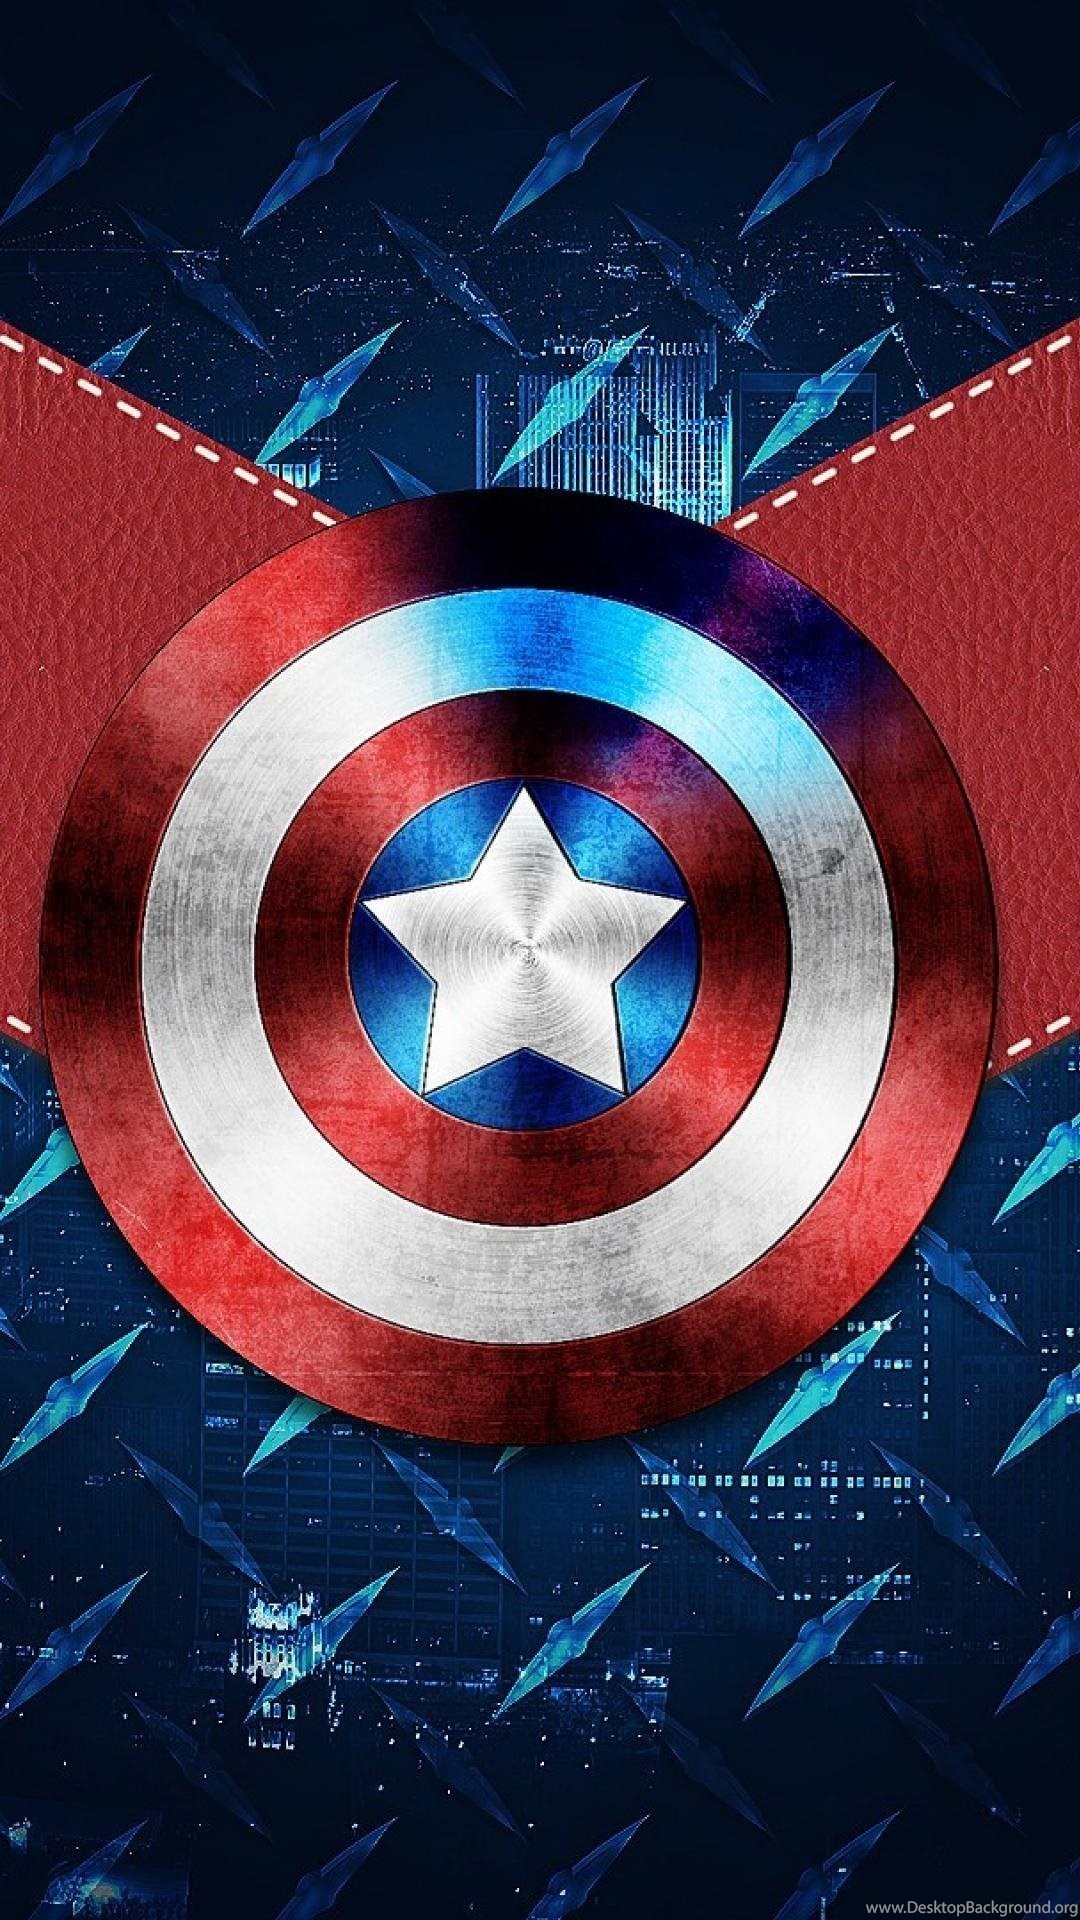 キャプテン・アメリカhd壁紙for mobile,キャプテン・アメリカ,スーパーヒーロー,架空の人物,映画,ポスター